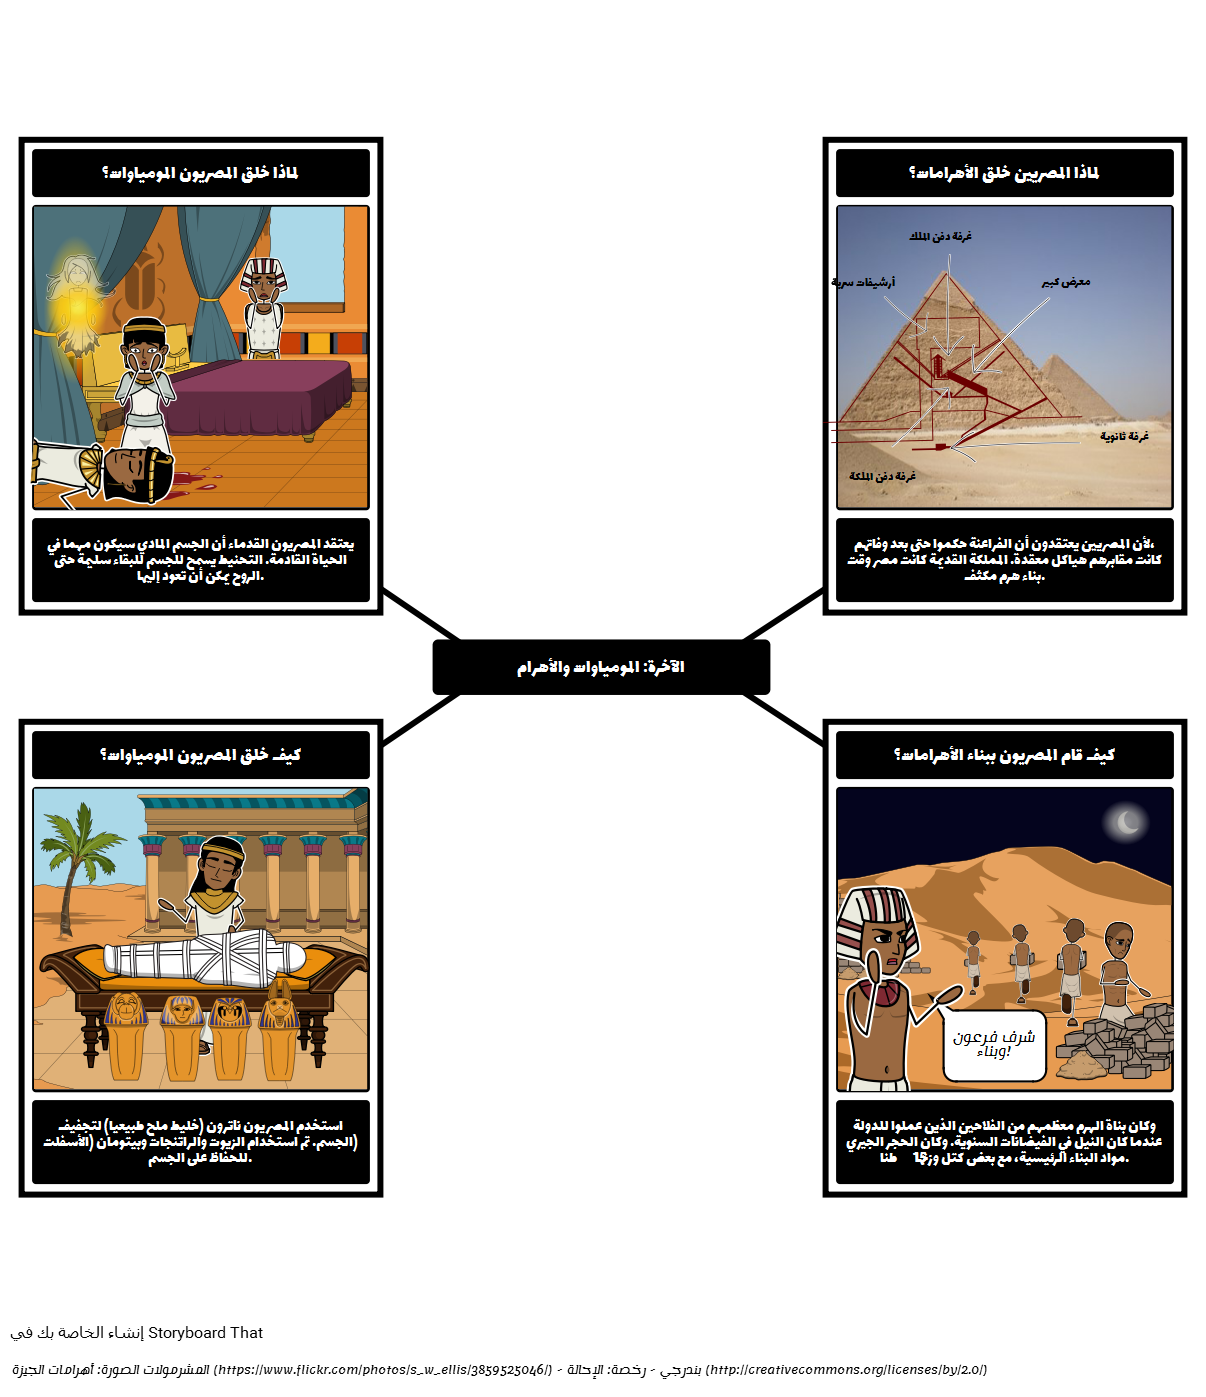 مقدمة إلى مصر القديمة - المومياوات والأهرامات